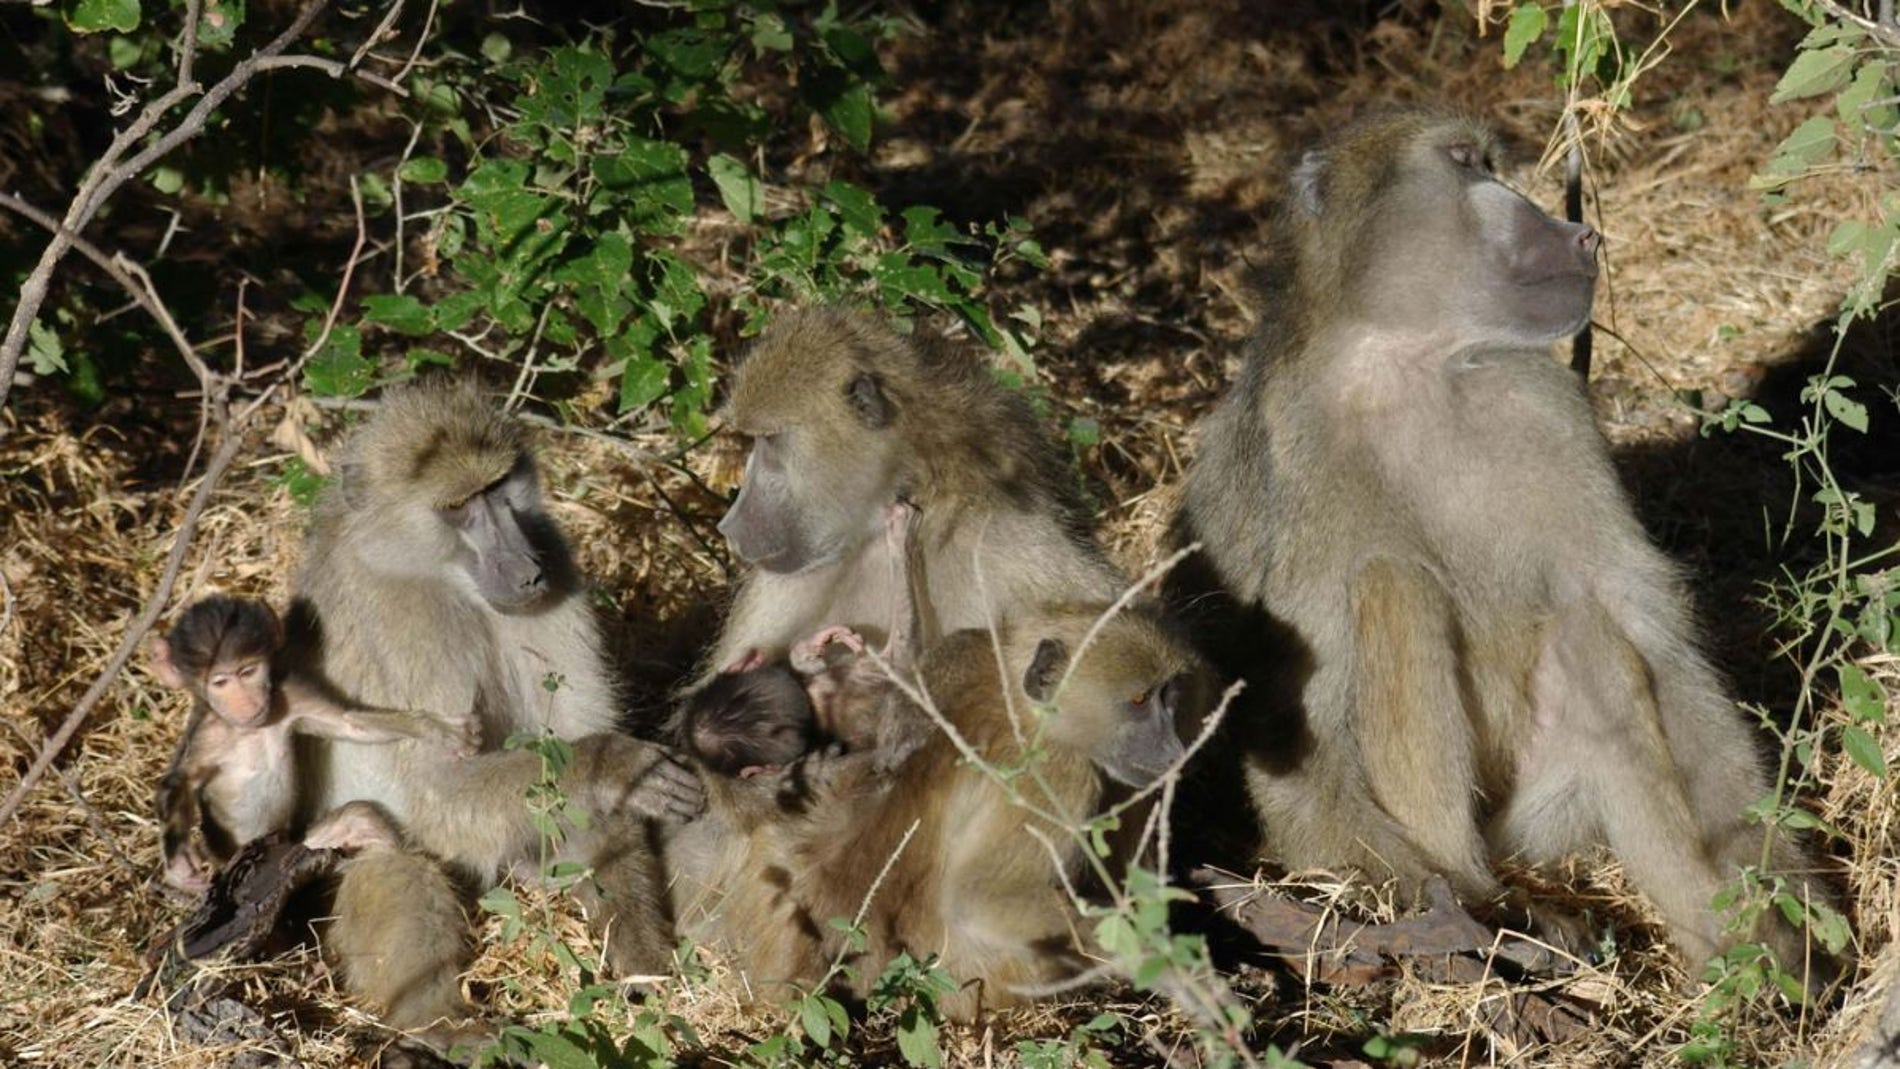 Las llamadas entre primates dependen del contexto y las relaciones sociales